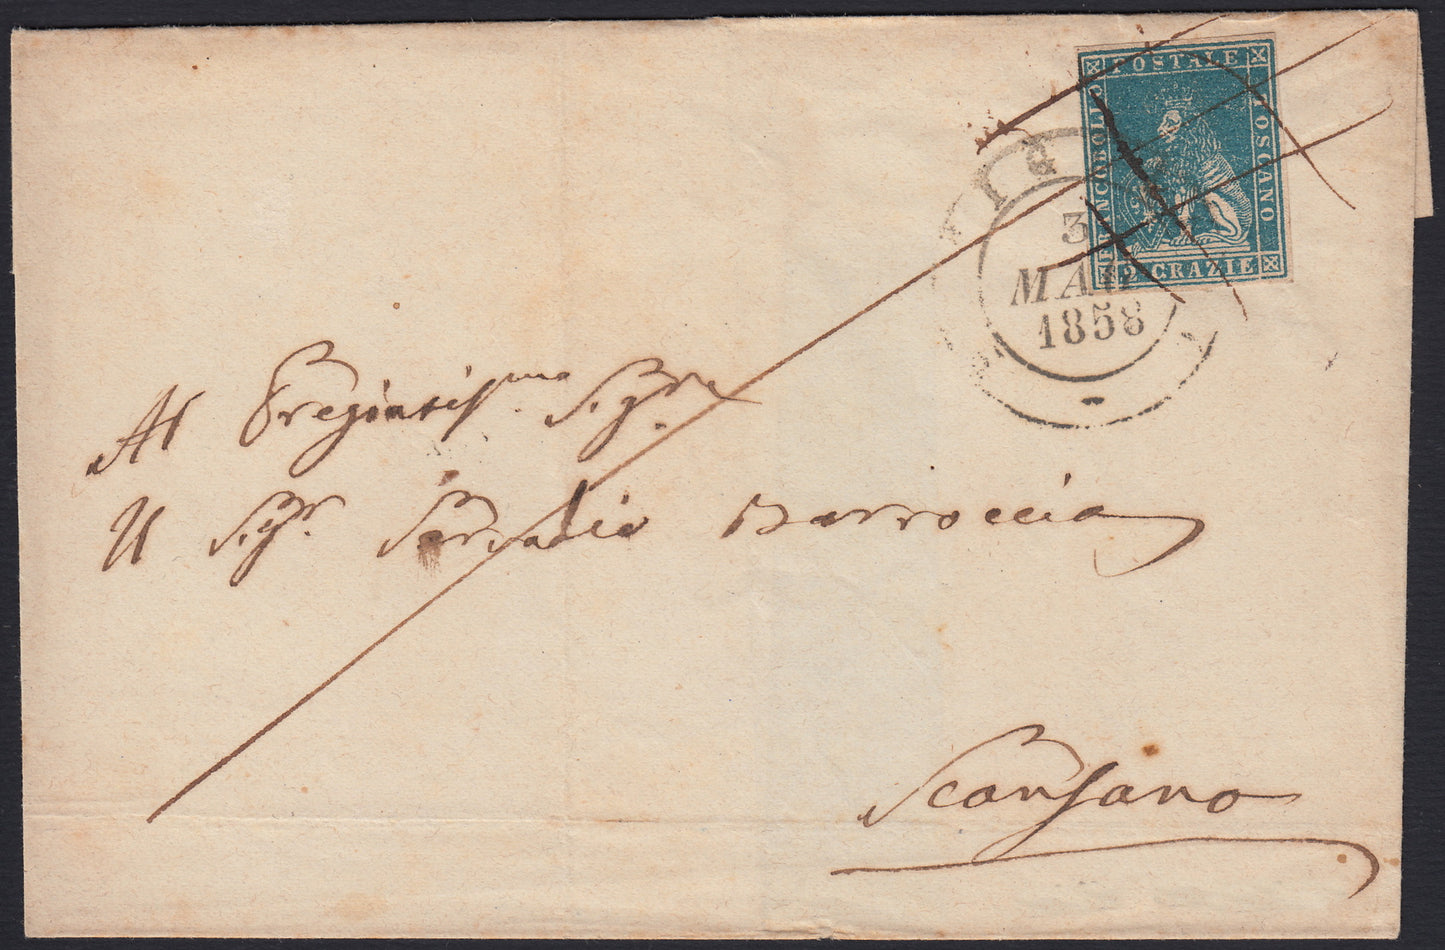 TosSP22 - 1858 - Lettera spedita da Pitigliano per Scansano 3/5/58 affrancata con 2 crazie verde grigio giallastro (13b).